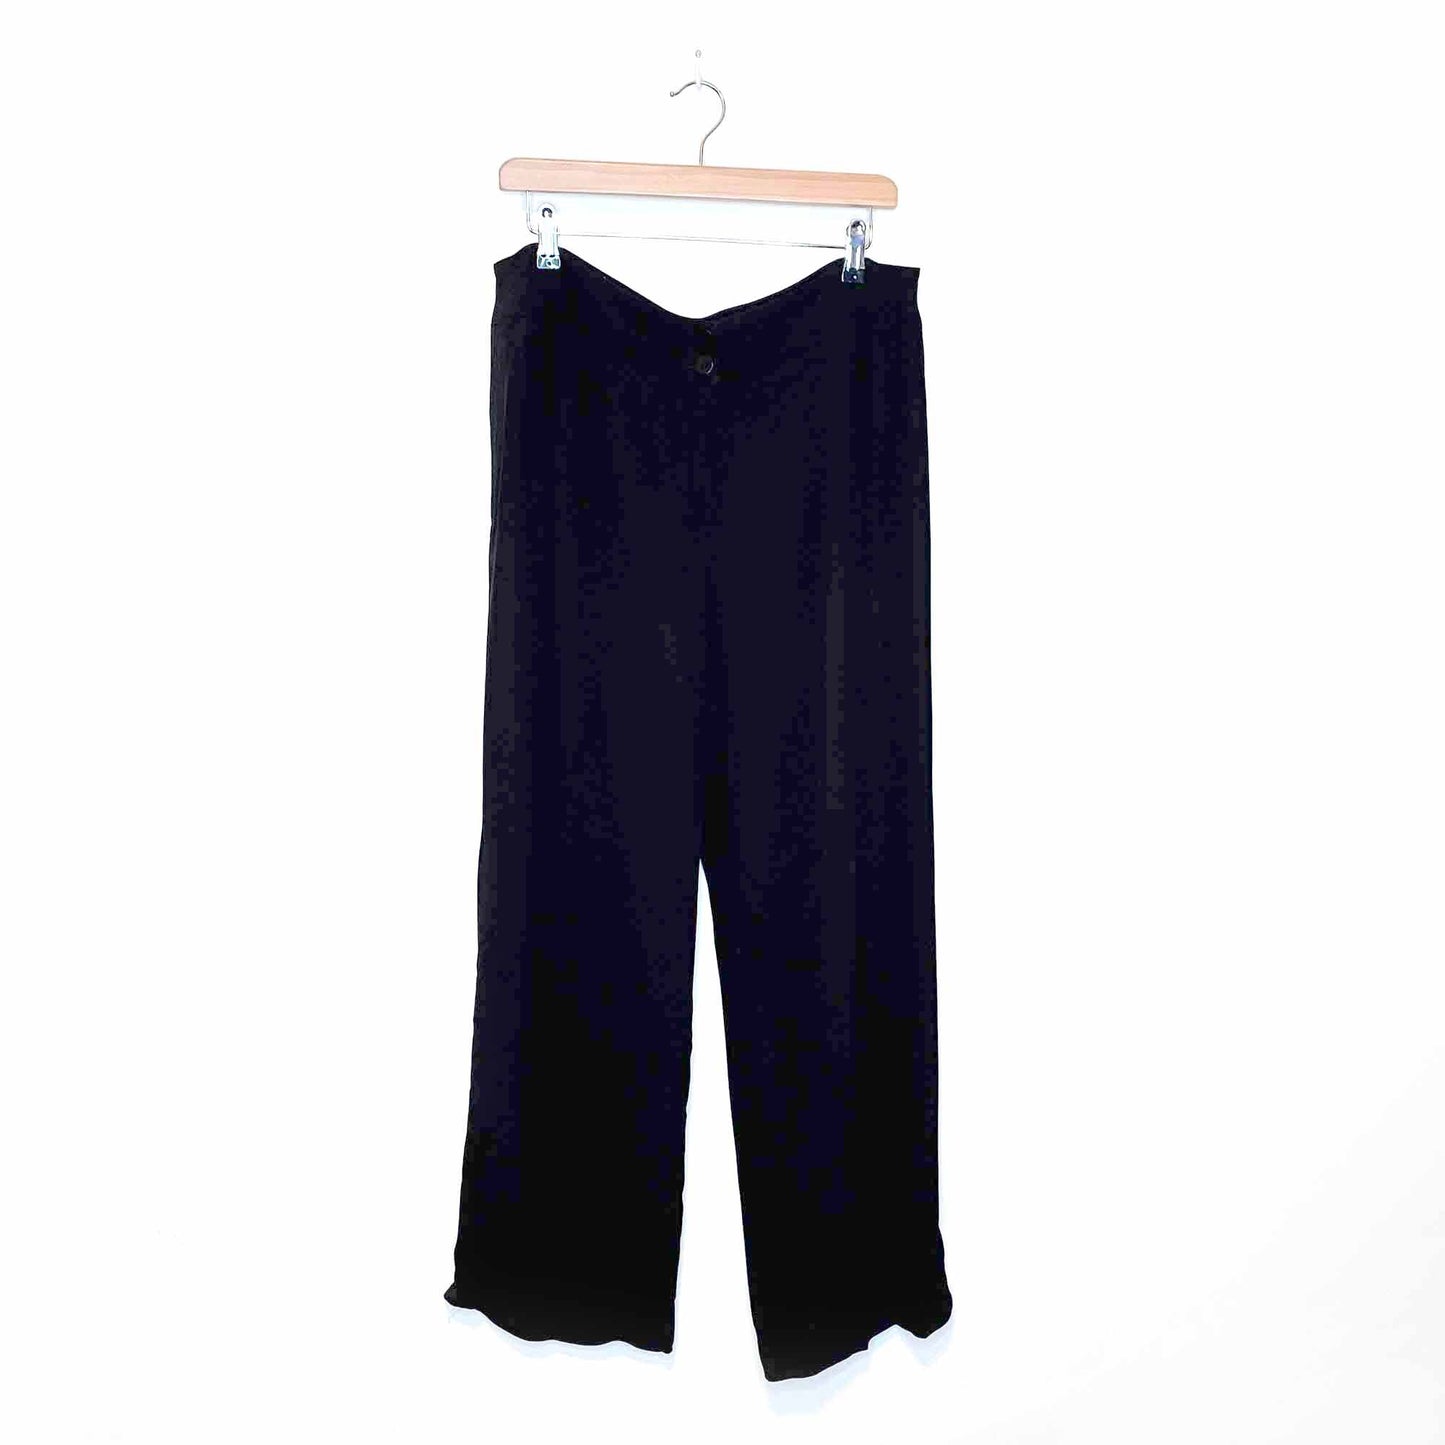 armani collezioni black high rise straight leg trouser - size 52